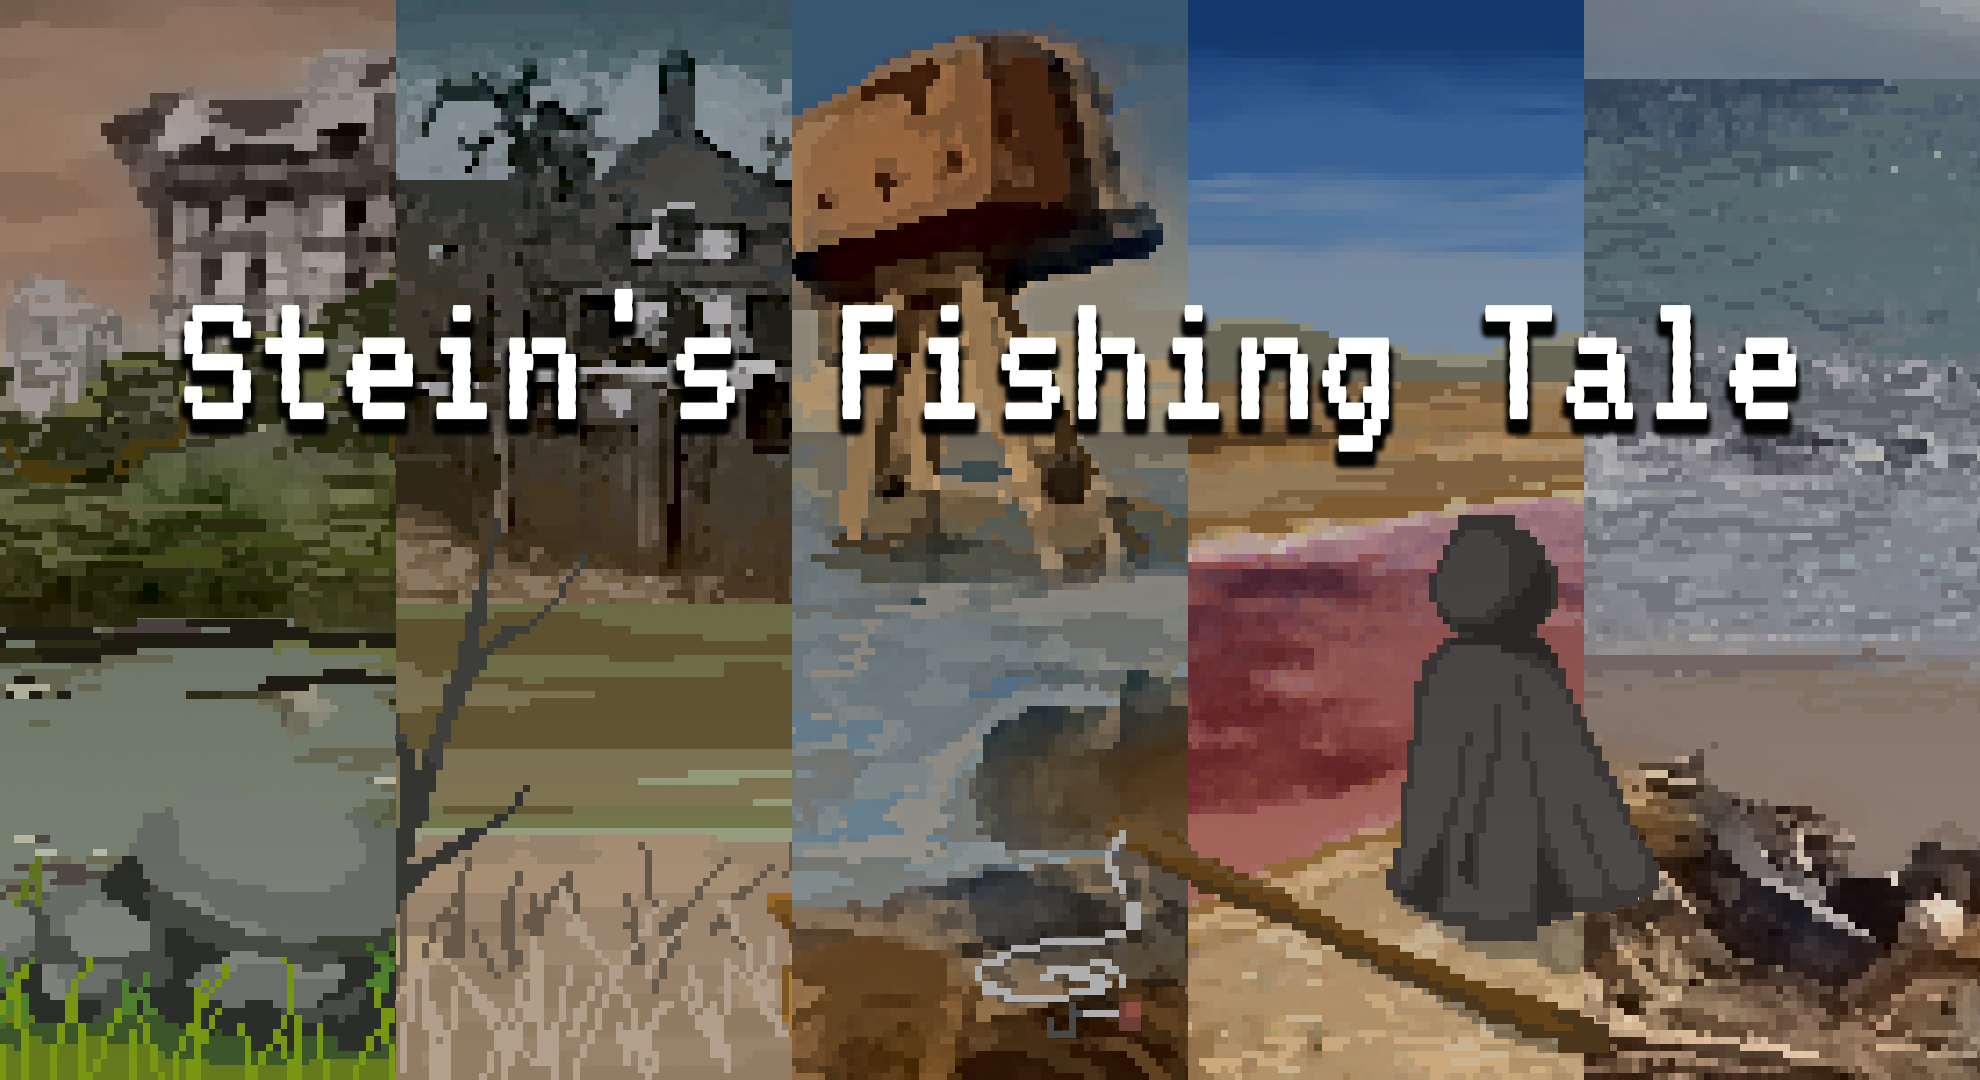 Stein's Fishing Tale